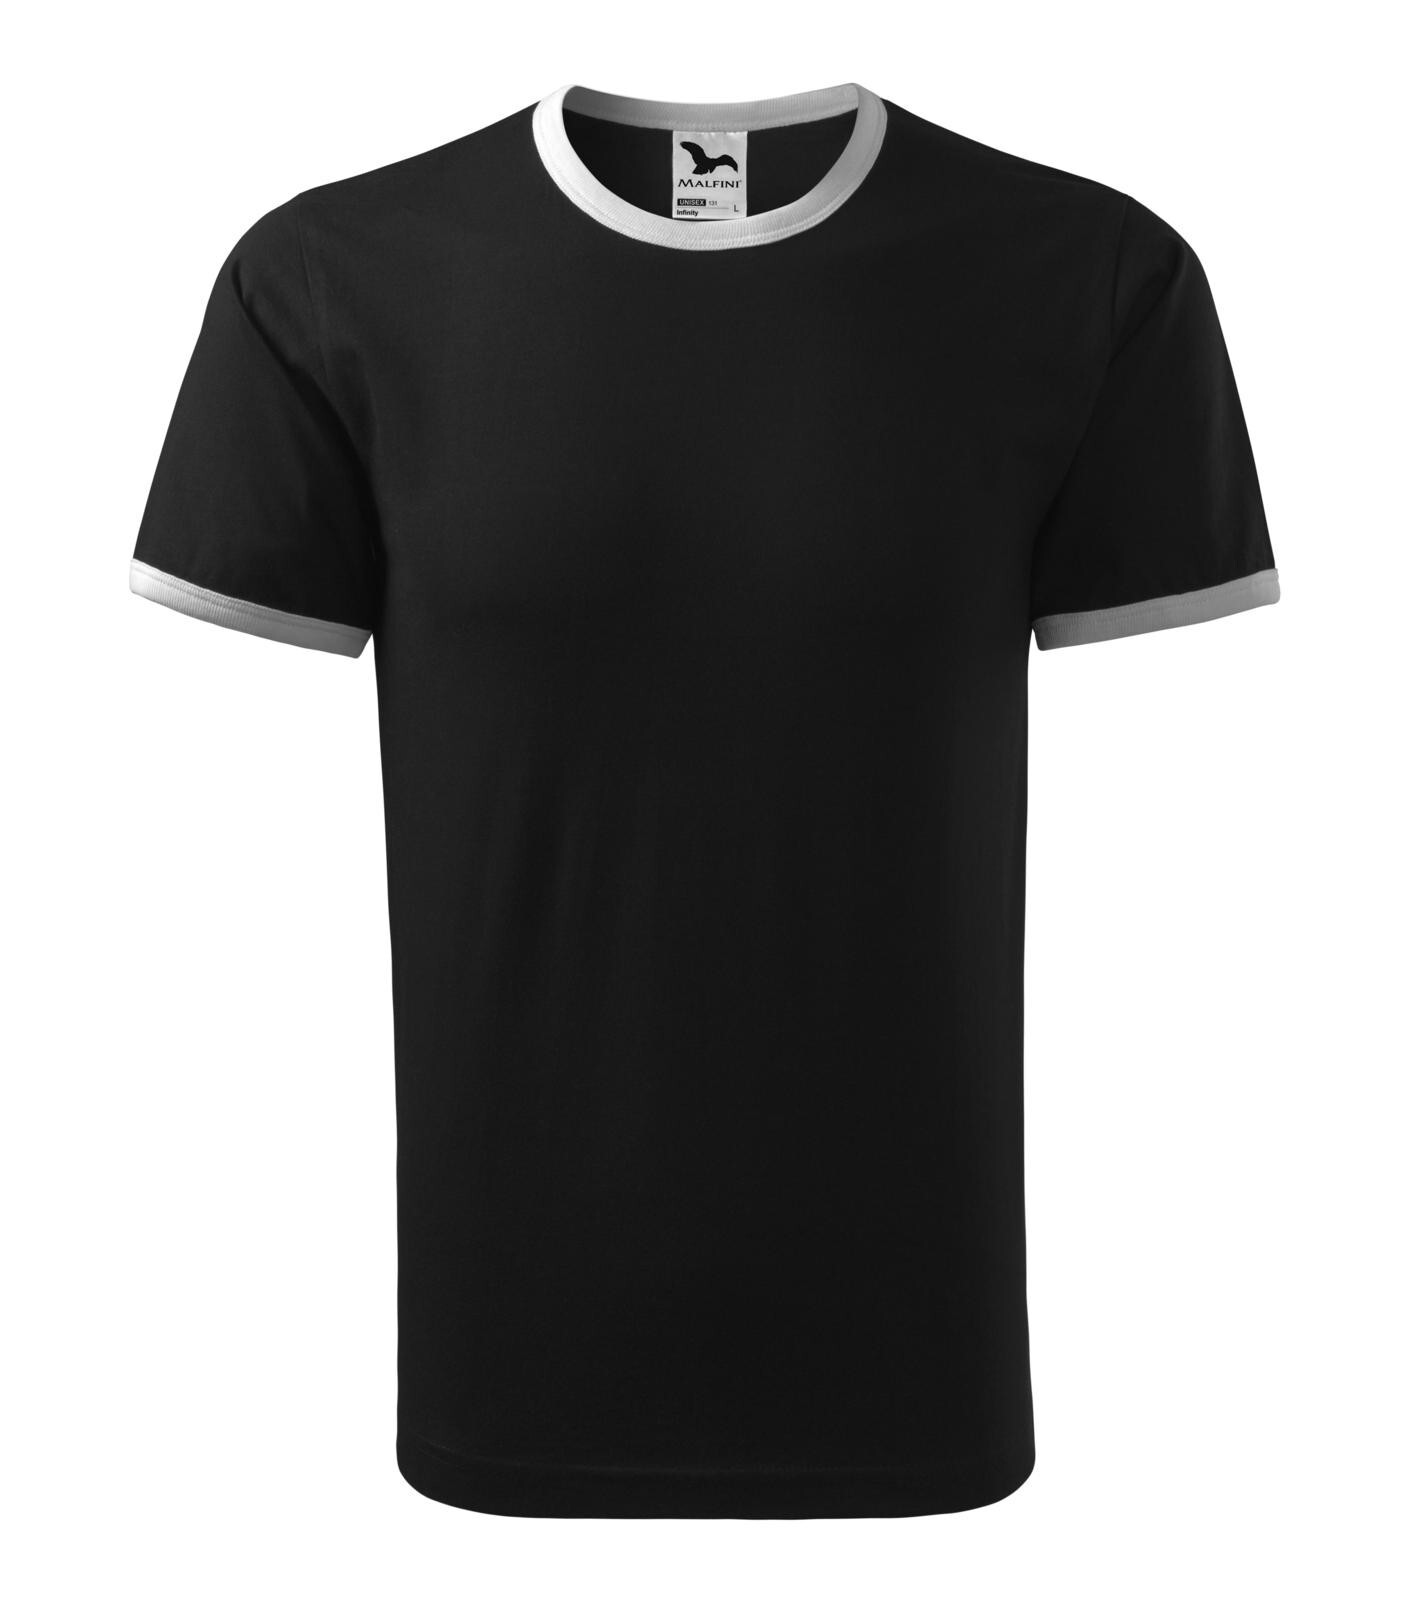 Unisex tričko Adler Infinity 131 - veľkosť: S, farba: čierna/biela